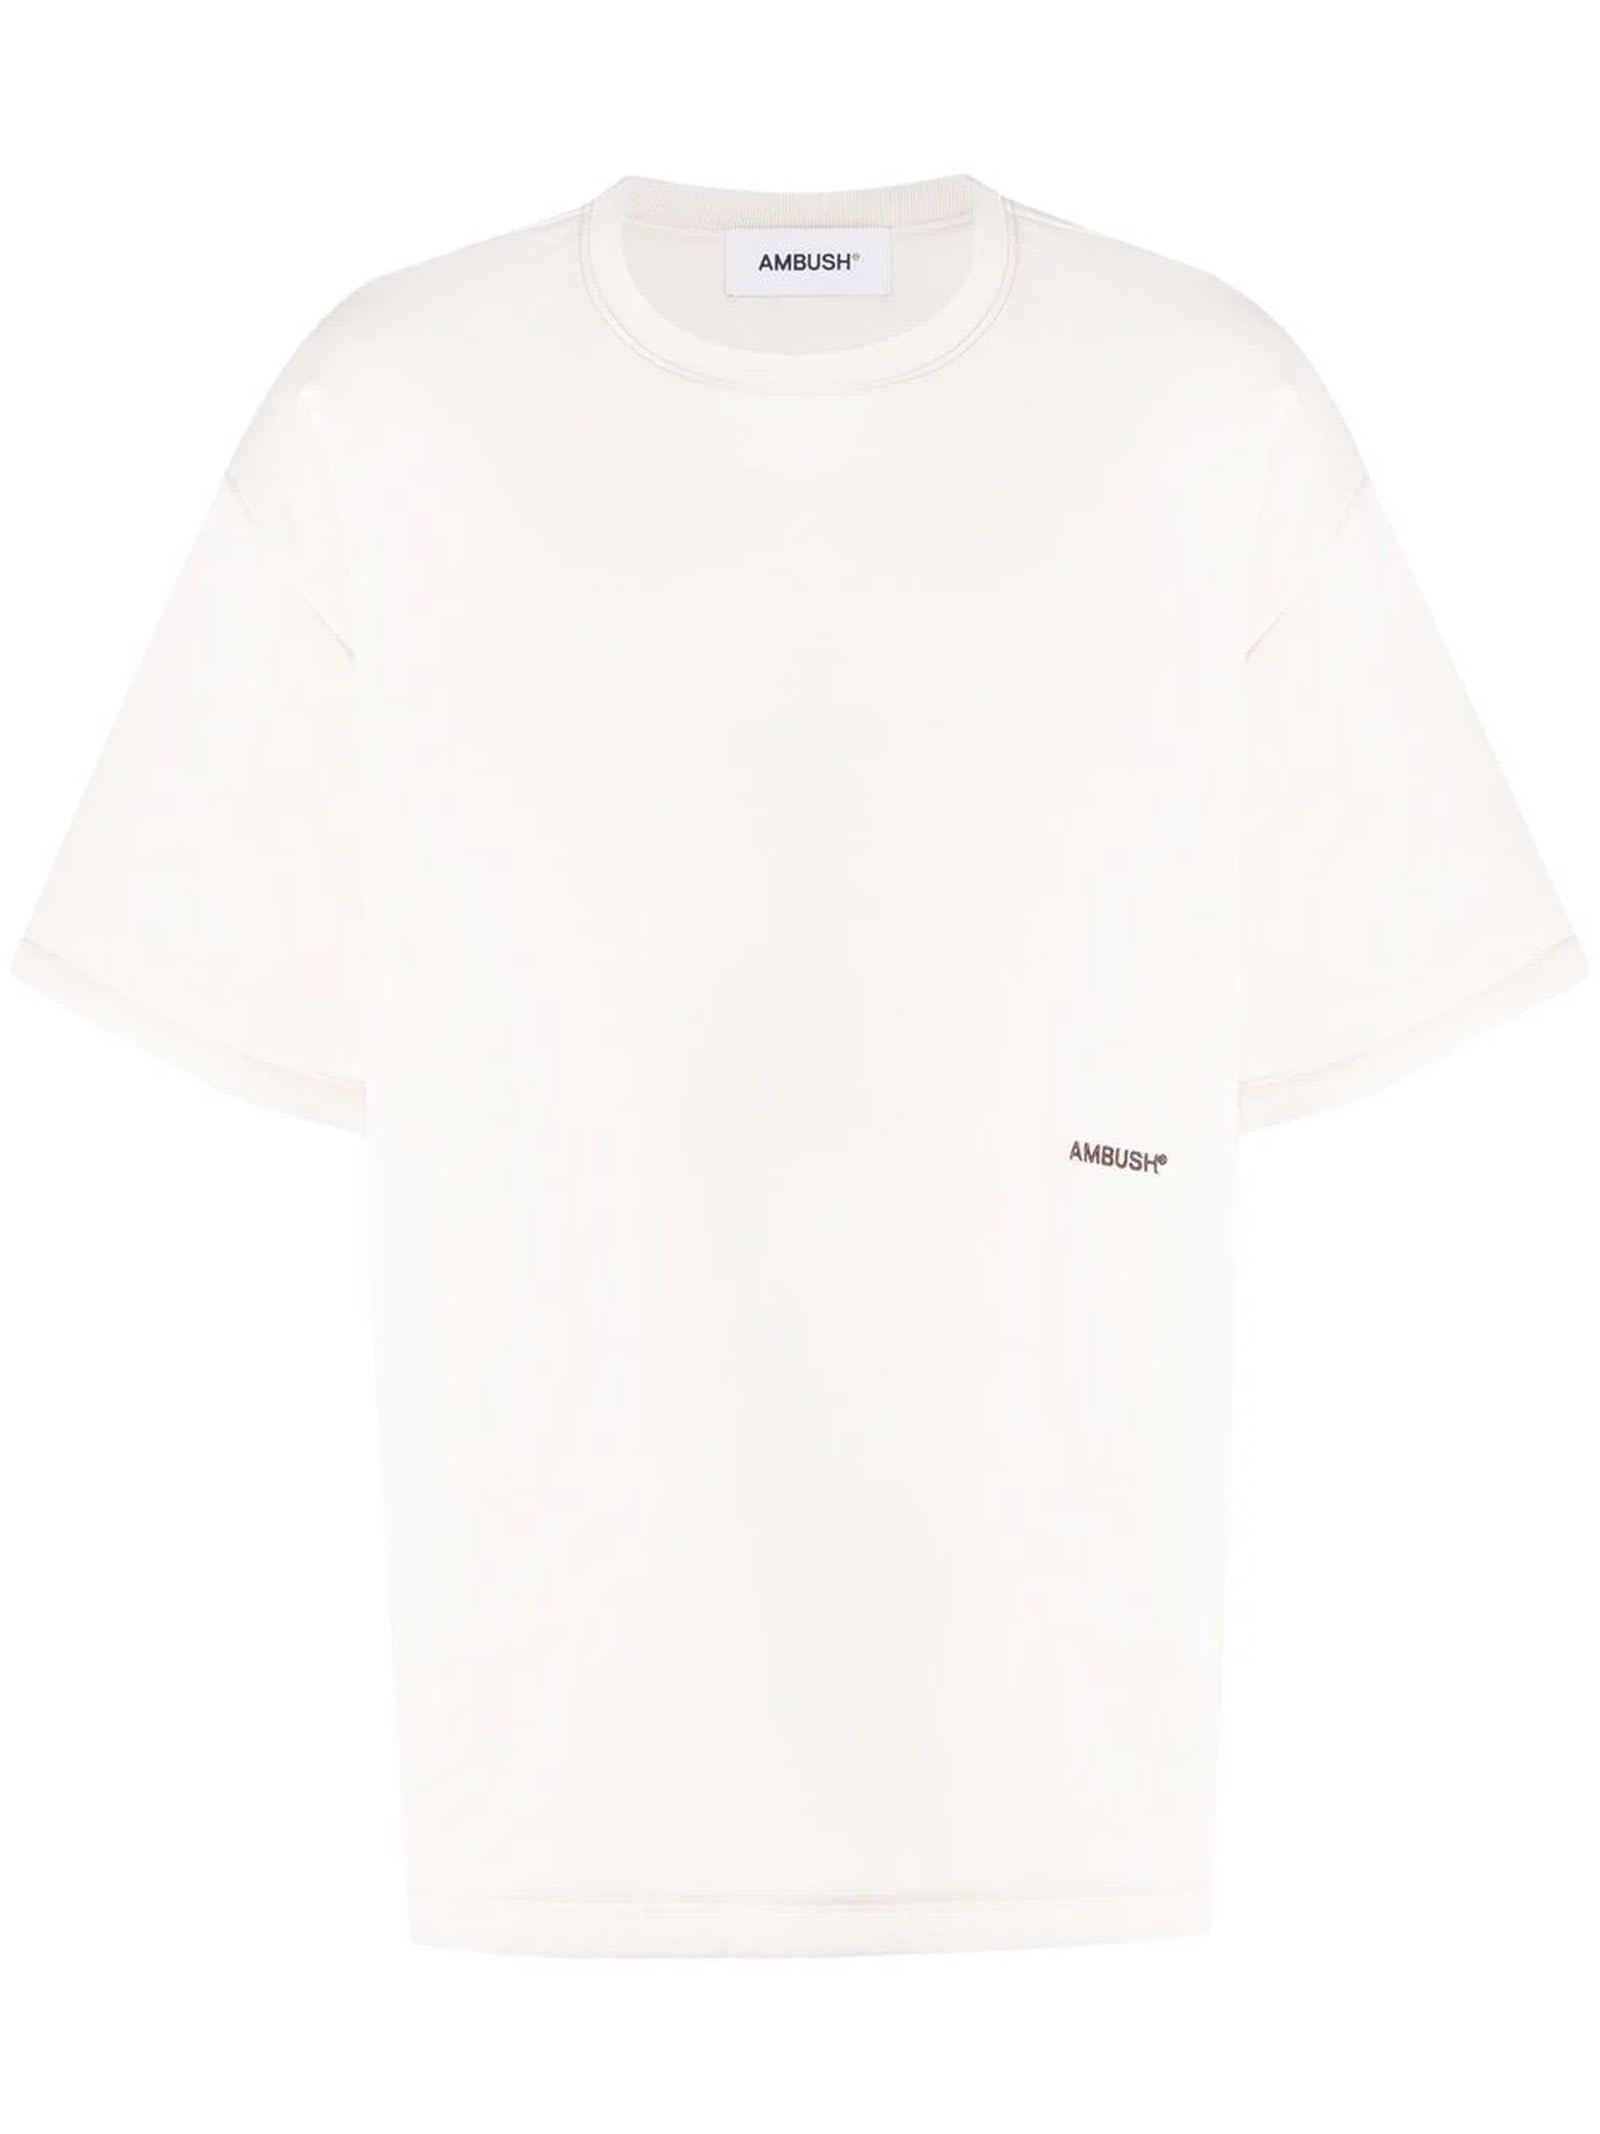 AMBUSH Cream White Cotton T-shirt